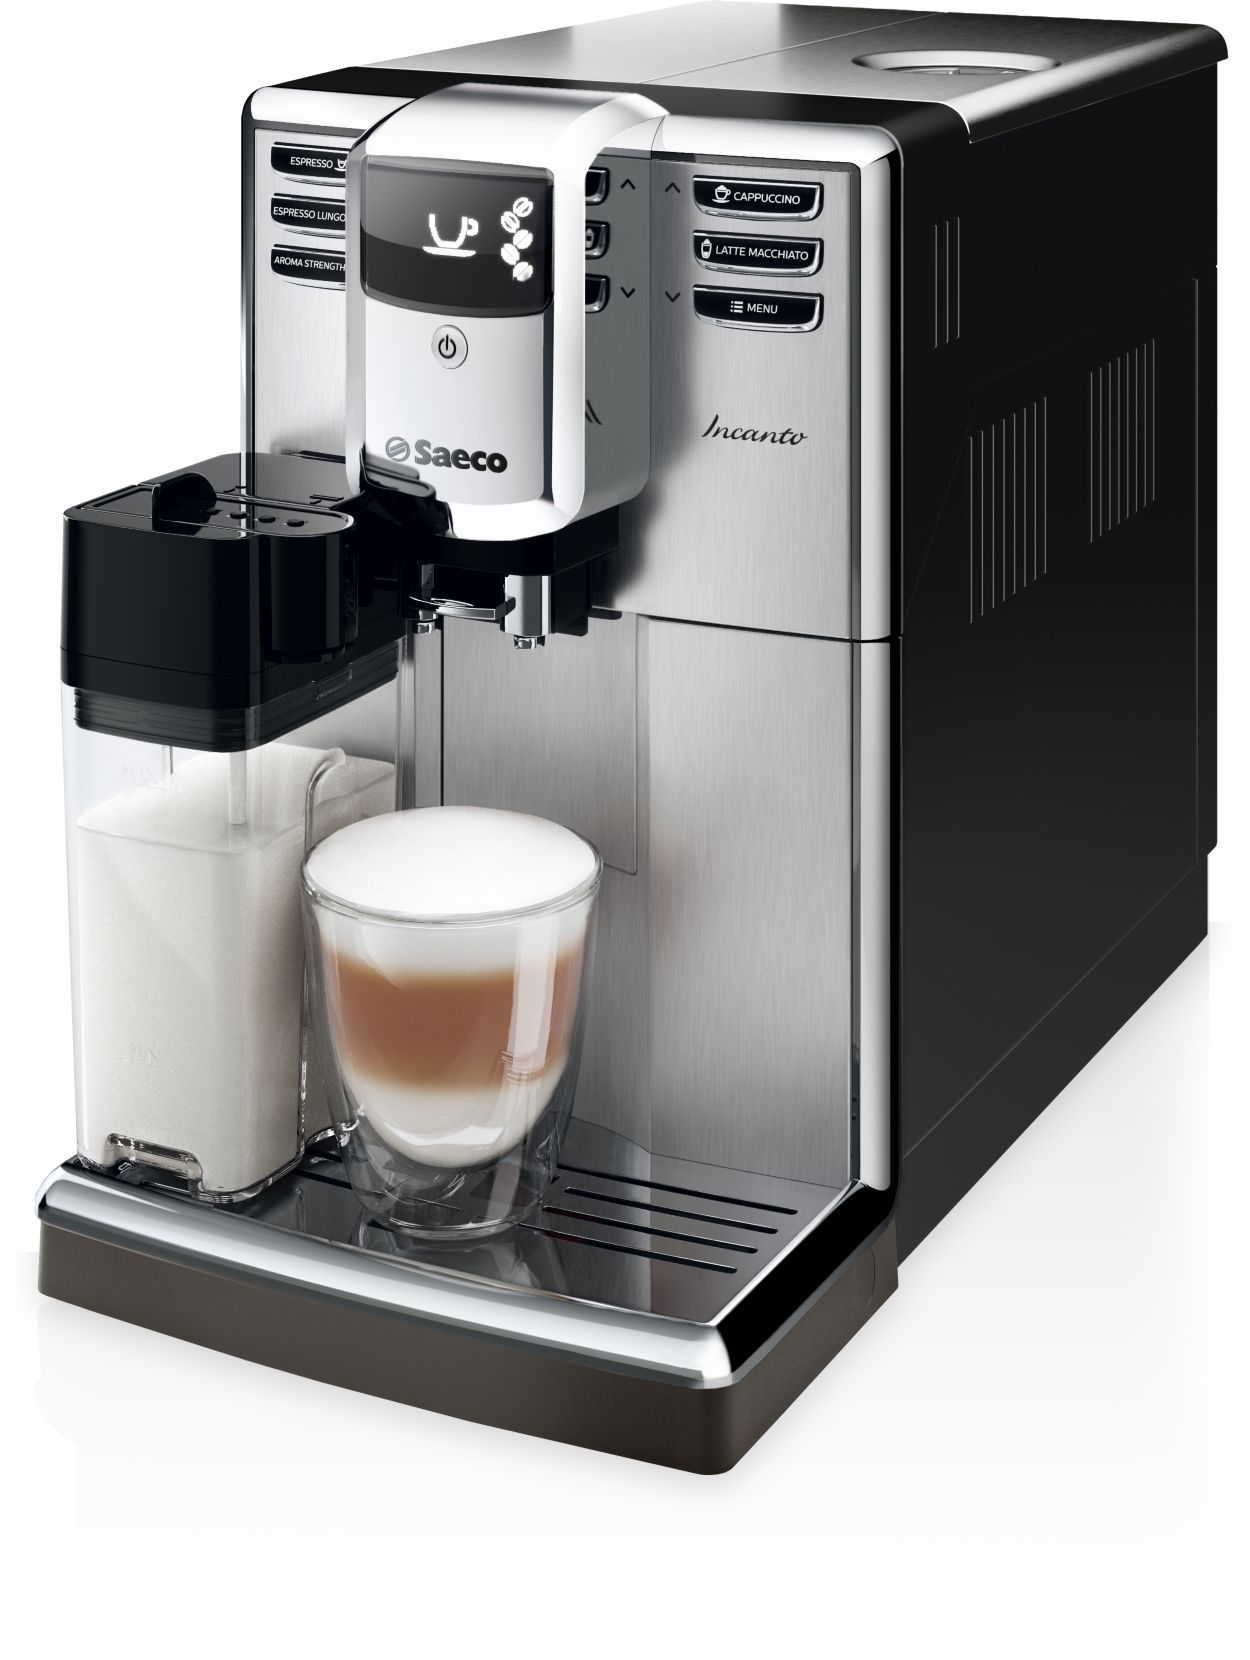 El mejor café, al mejor precio: Saeco HD8423 por sólo 79,95 euros